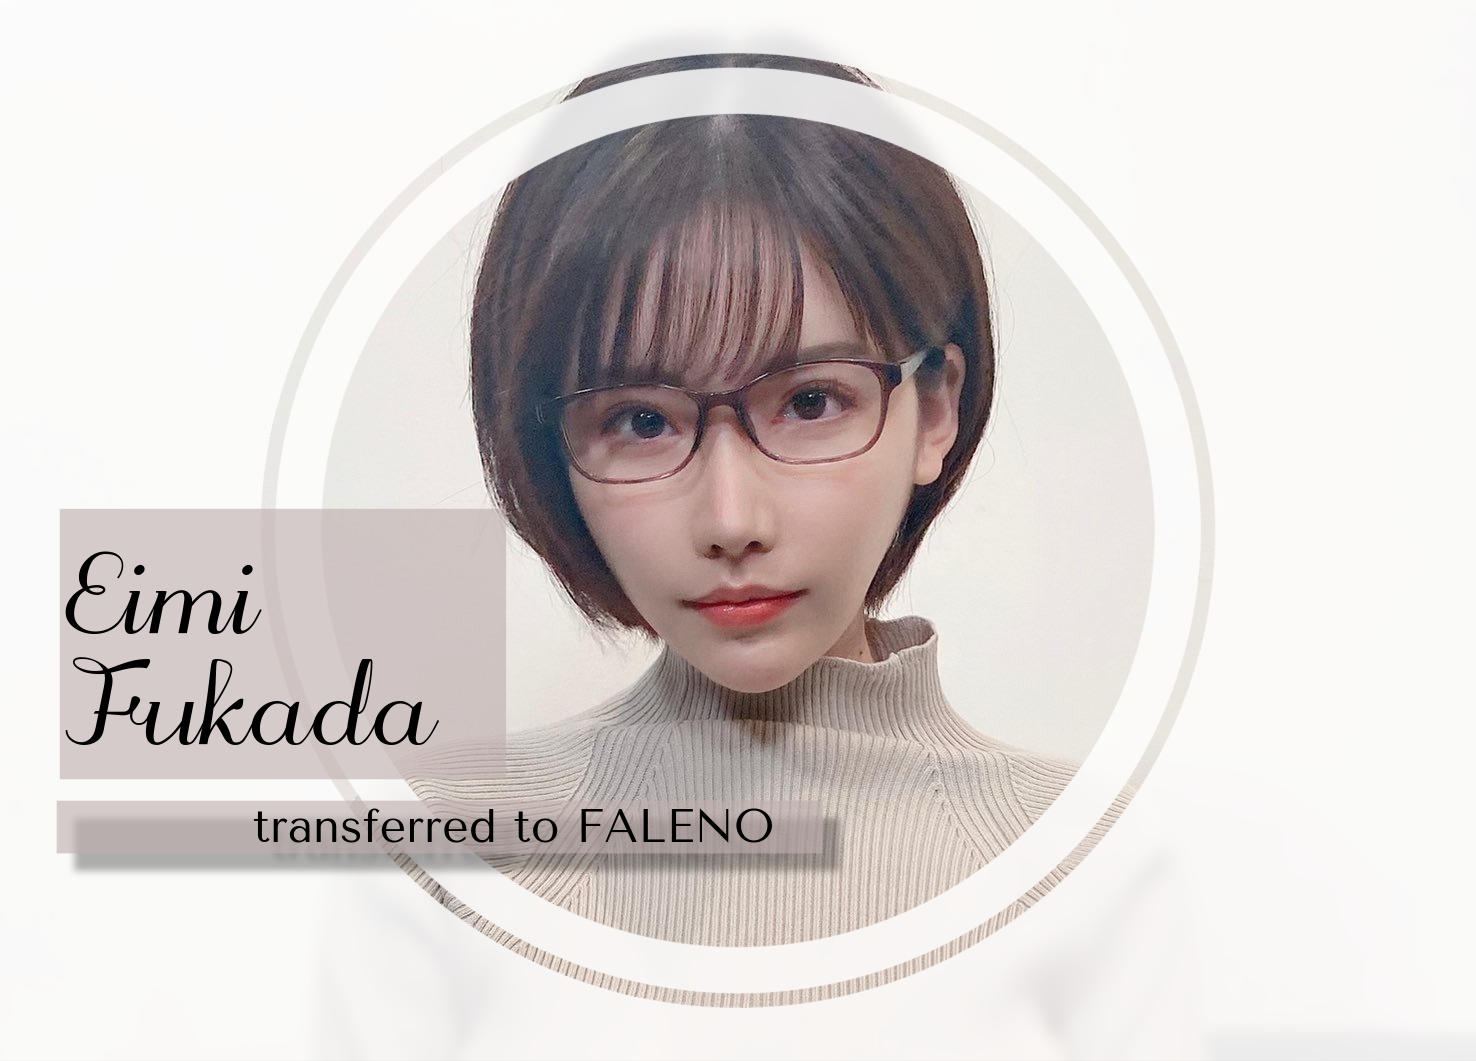 Eimi Fukada transferred to Faleno